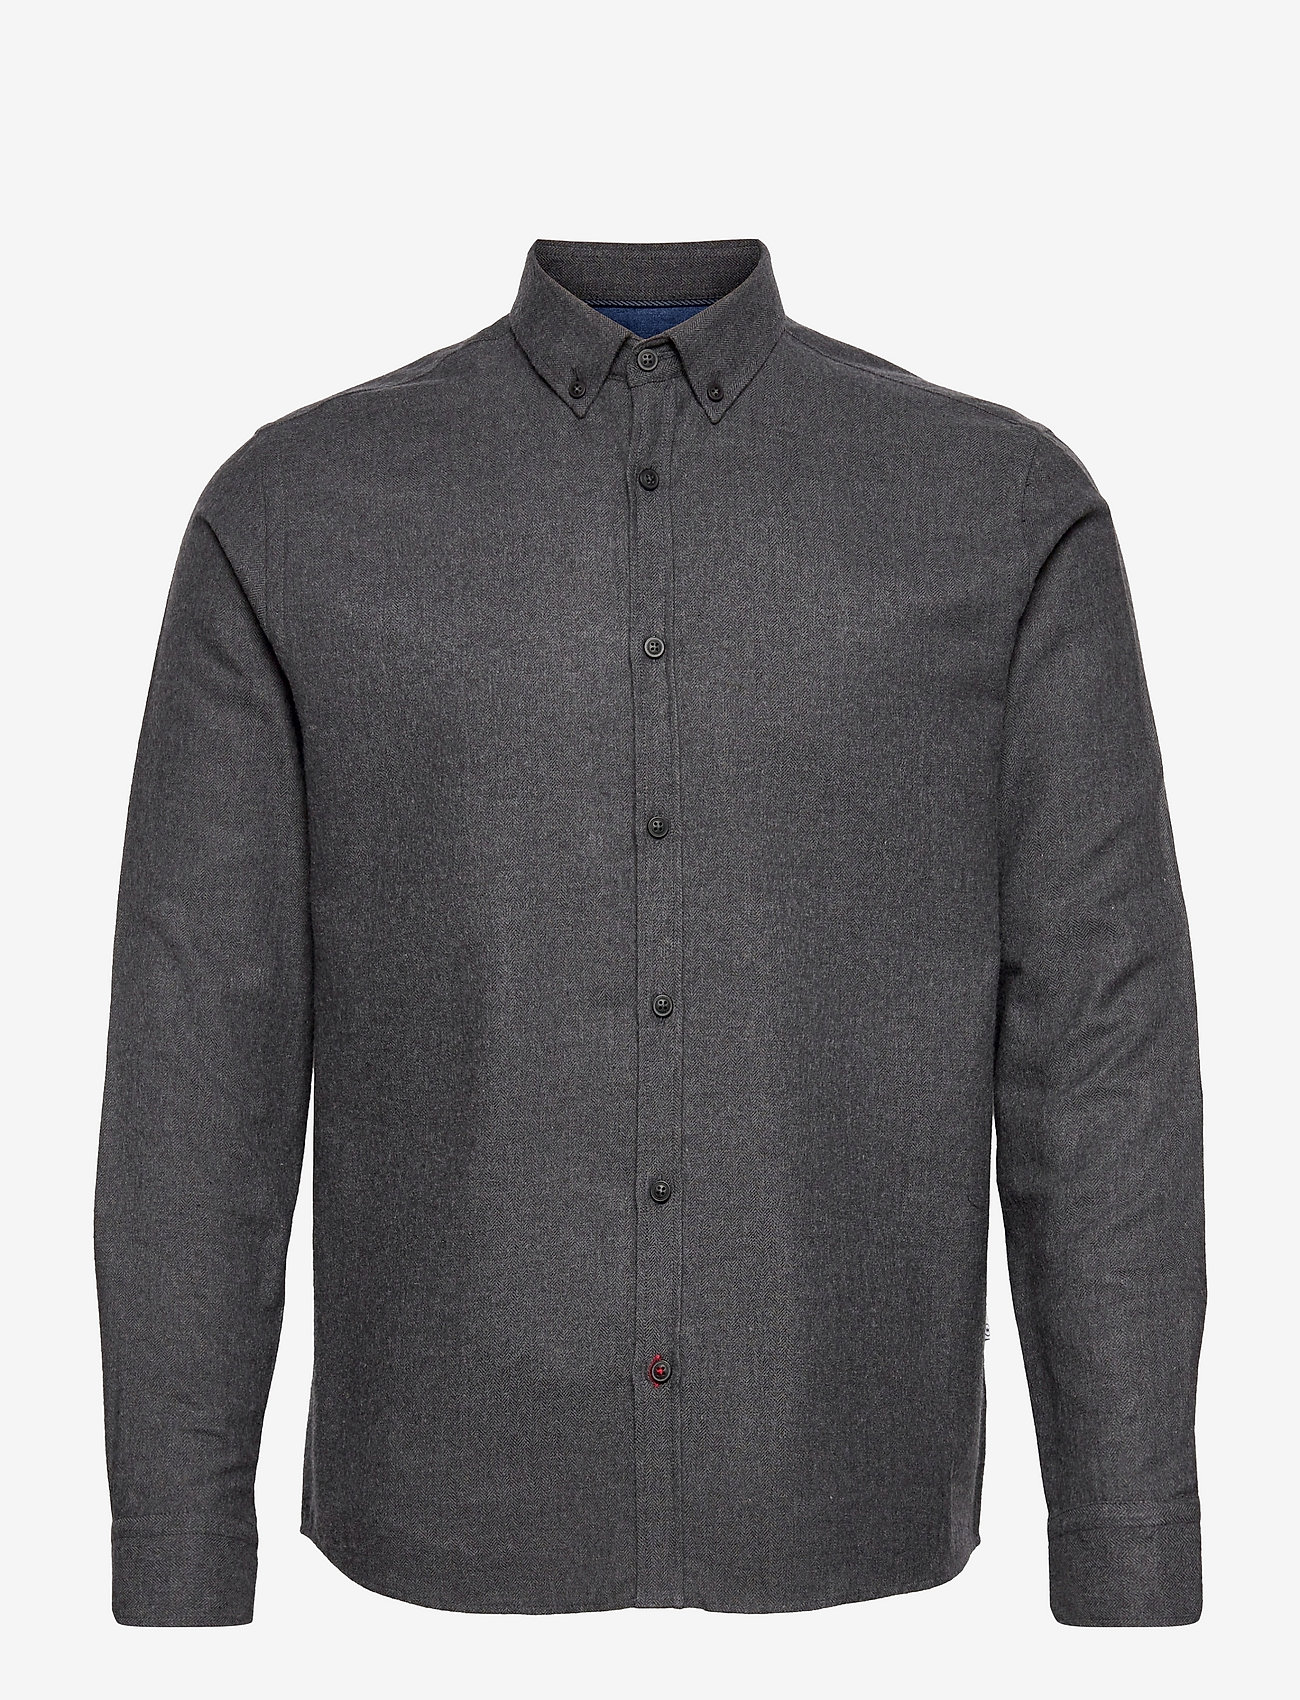 Kronstadt - Johan Herringbone flannel shirt - basic skjorter - black - 0